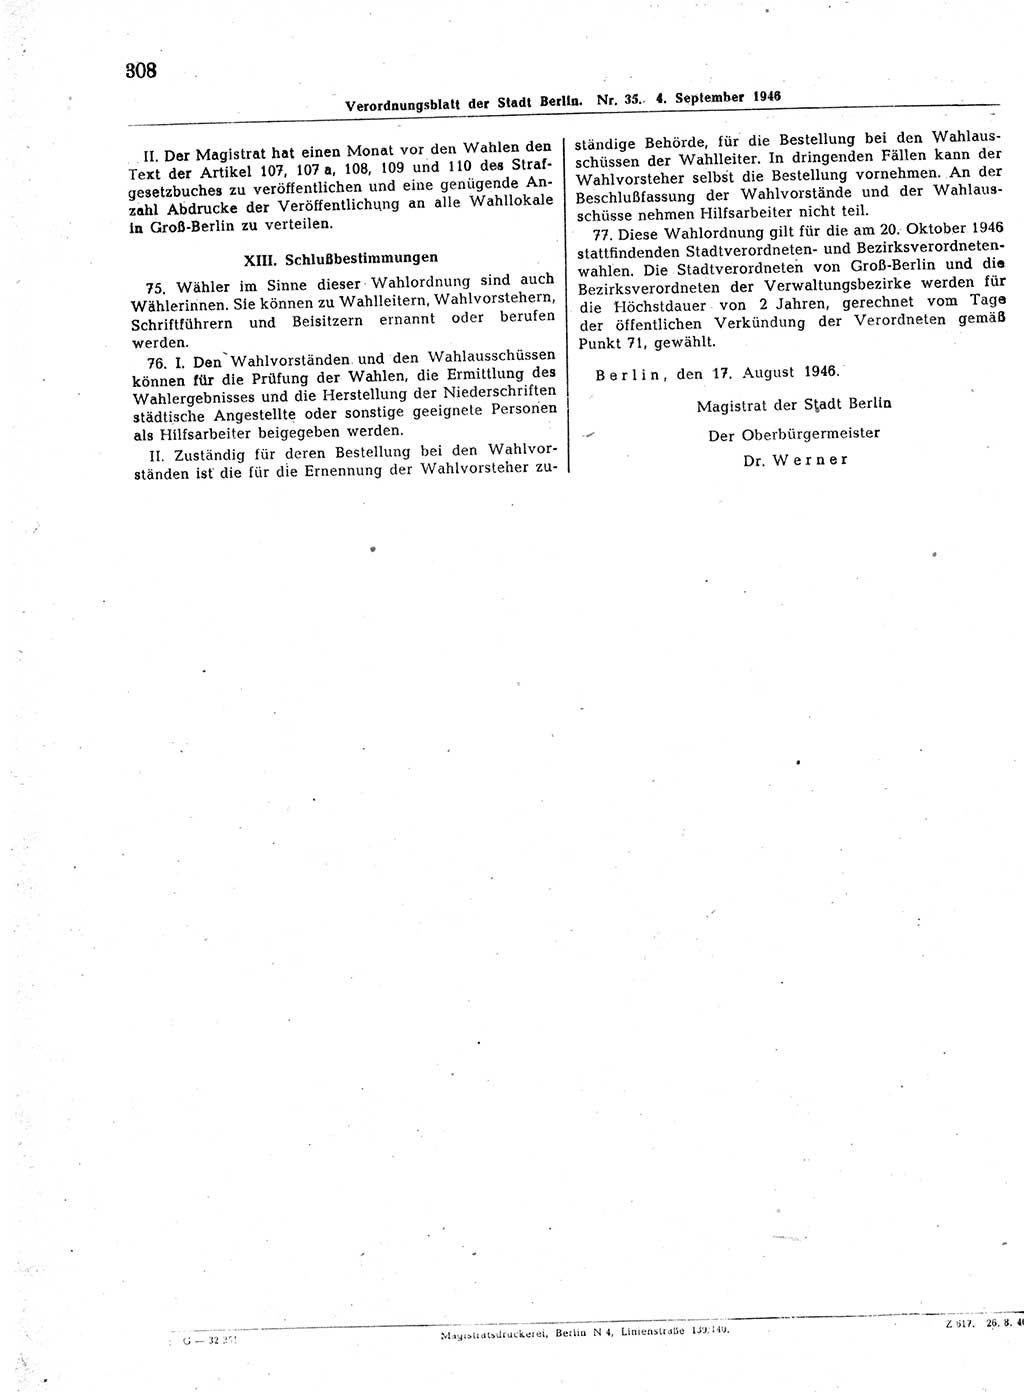 Verordnungsblatt (VOBl.) der Stadt Berlin, für Groß-Berlin 1946, Seite 308 (VOBl. Bln. 1946, S. 308)